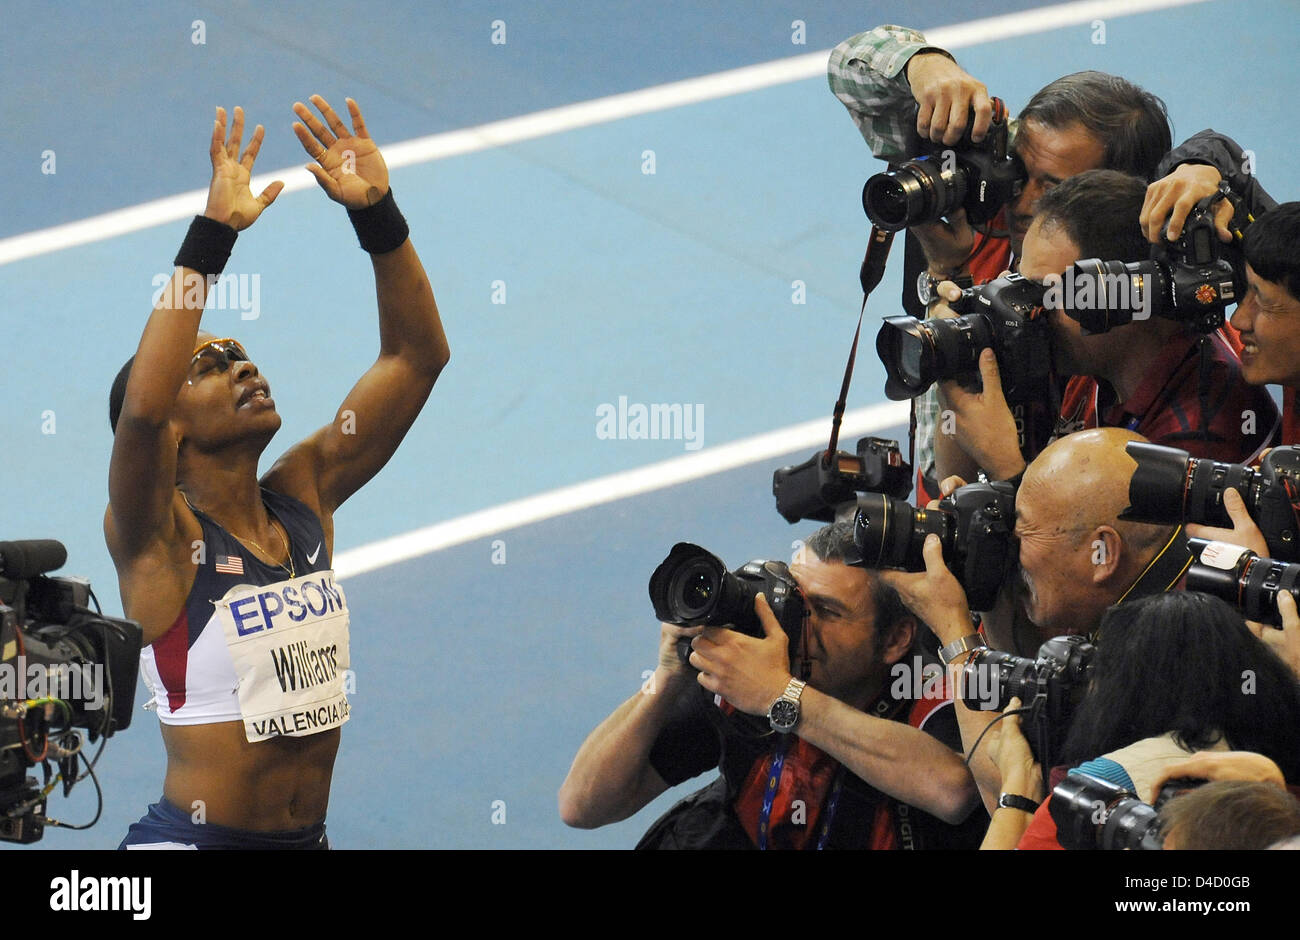 US-Athleten Angela Williams jubelt nach dem Sieg der 60m Frauen Finale am 12. IAAF World Indoor Championships in Athletics in Valencia, Spanien, 7. März 2008. Foto: GERO BRELOER Stockfoto